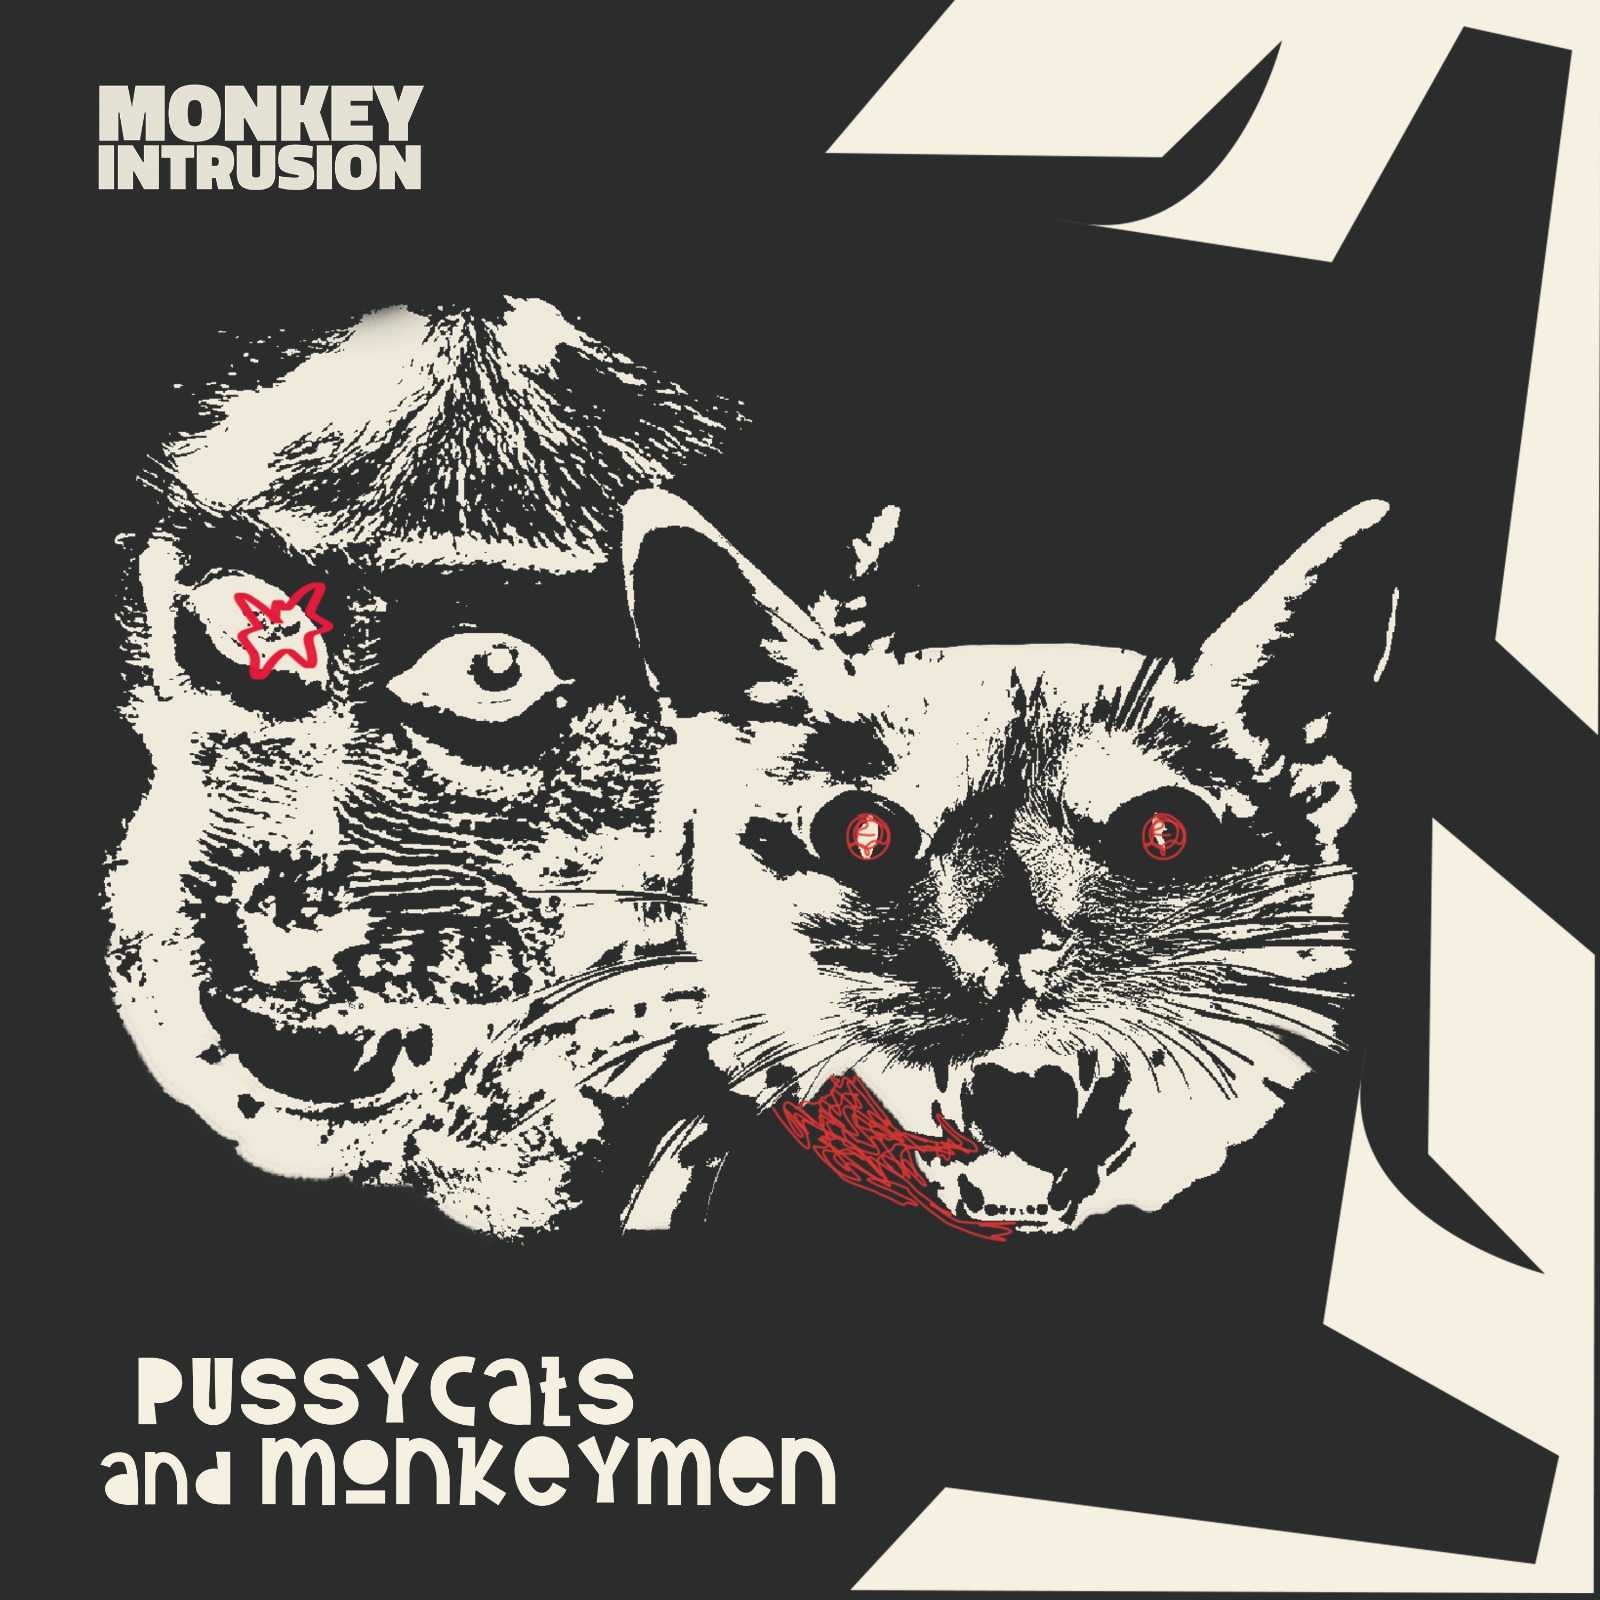 I Monkey Intrusion pubblicano l'album di debutto Pussycats and Monkeymen